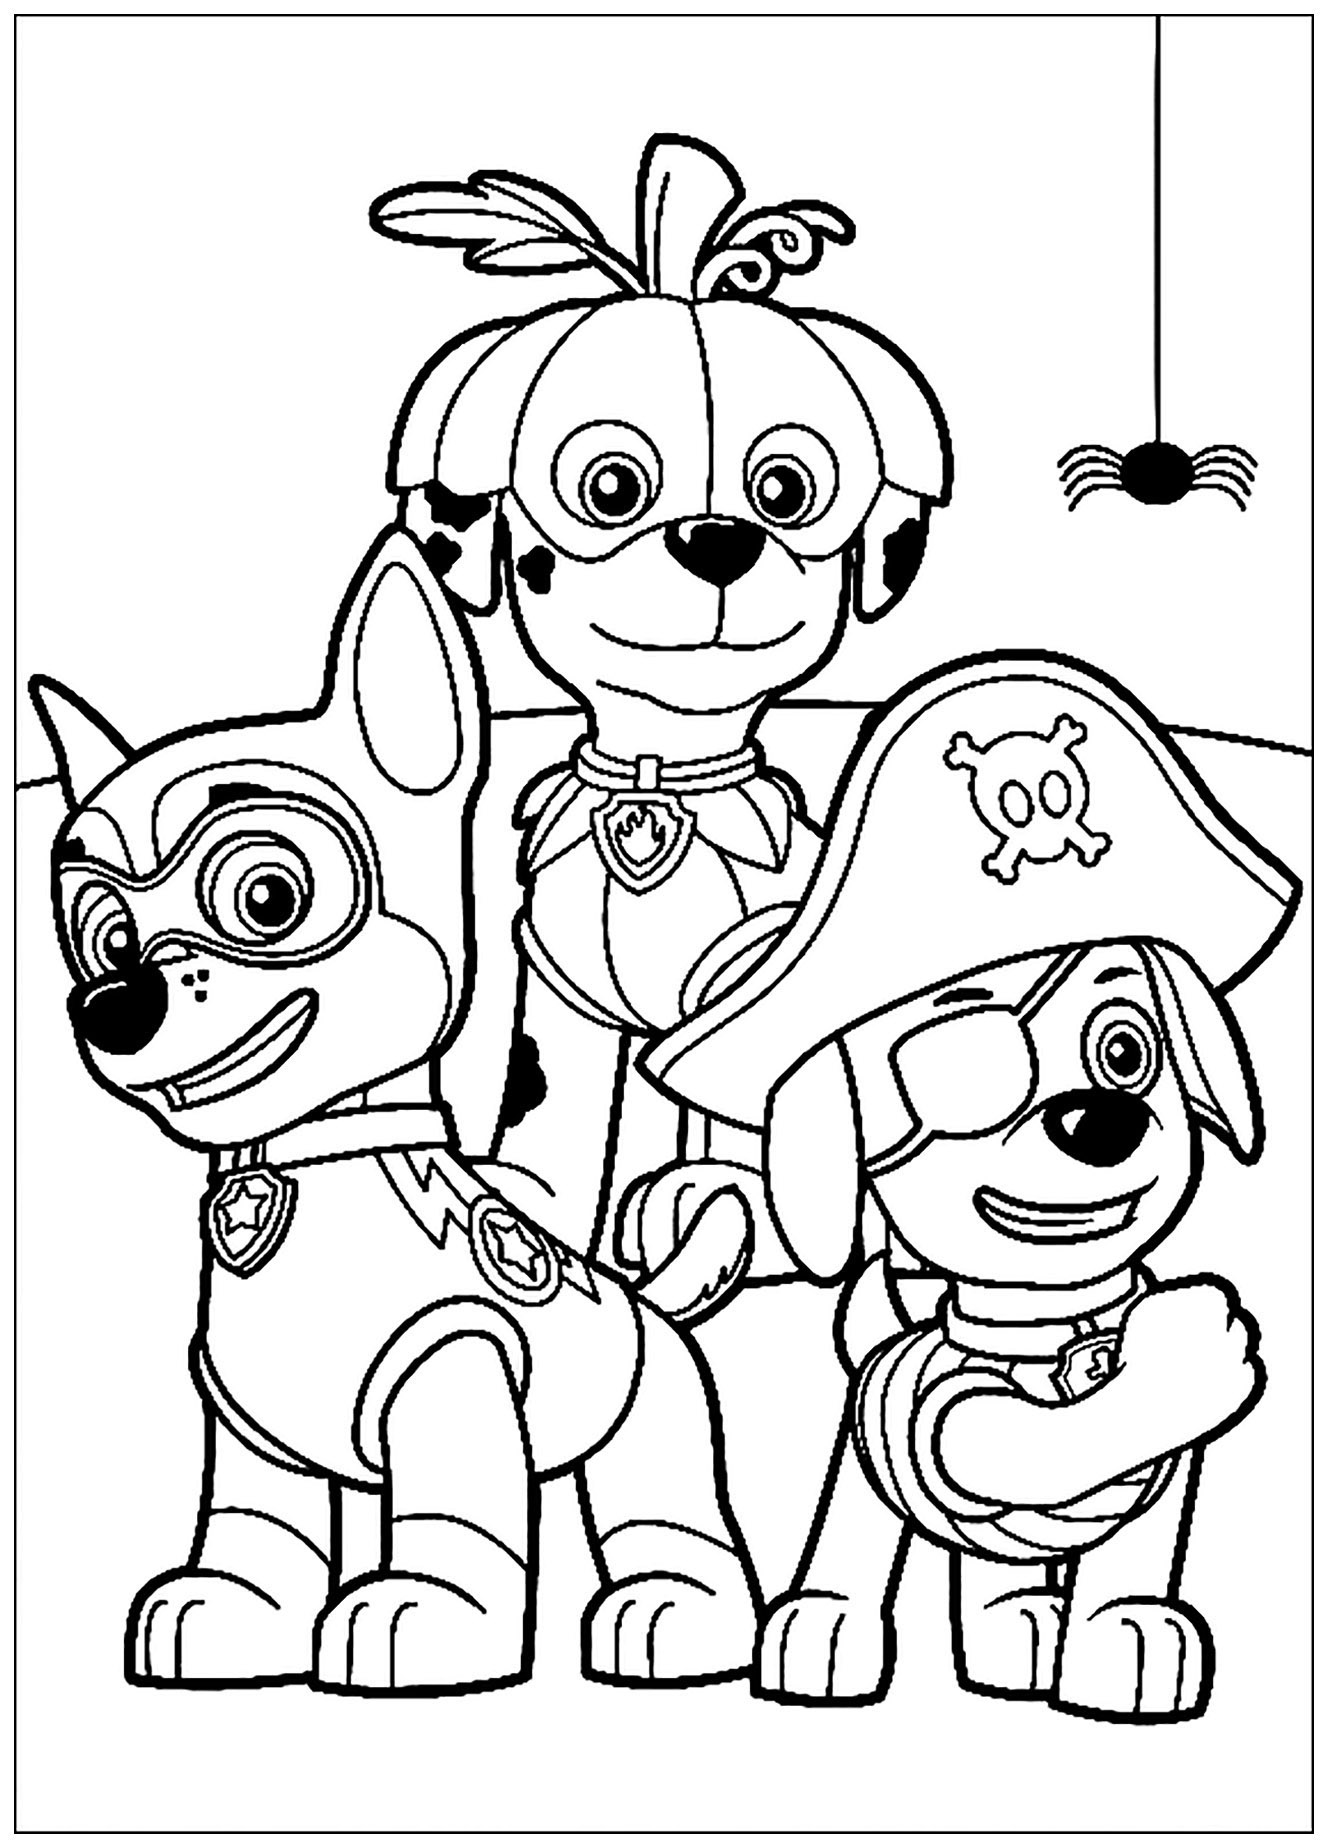 Dibujo de PAW Patrol, Patrulla de cachorros para imprimir y colorear: Tres de los perros de la patrulla